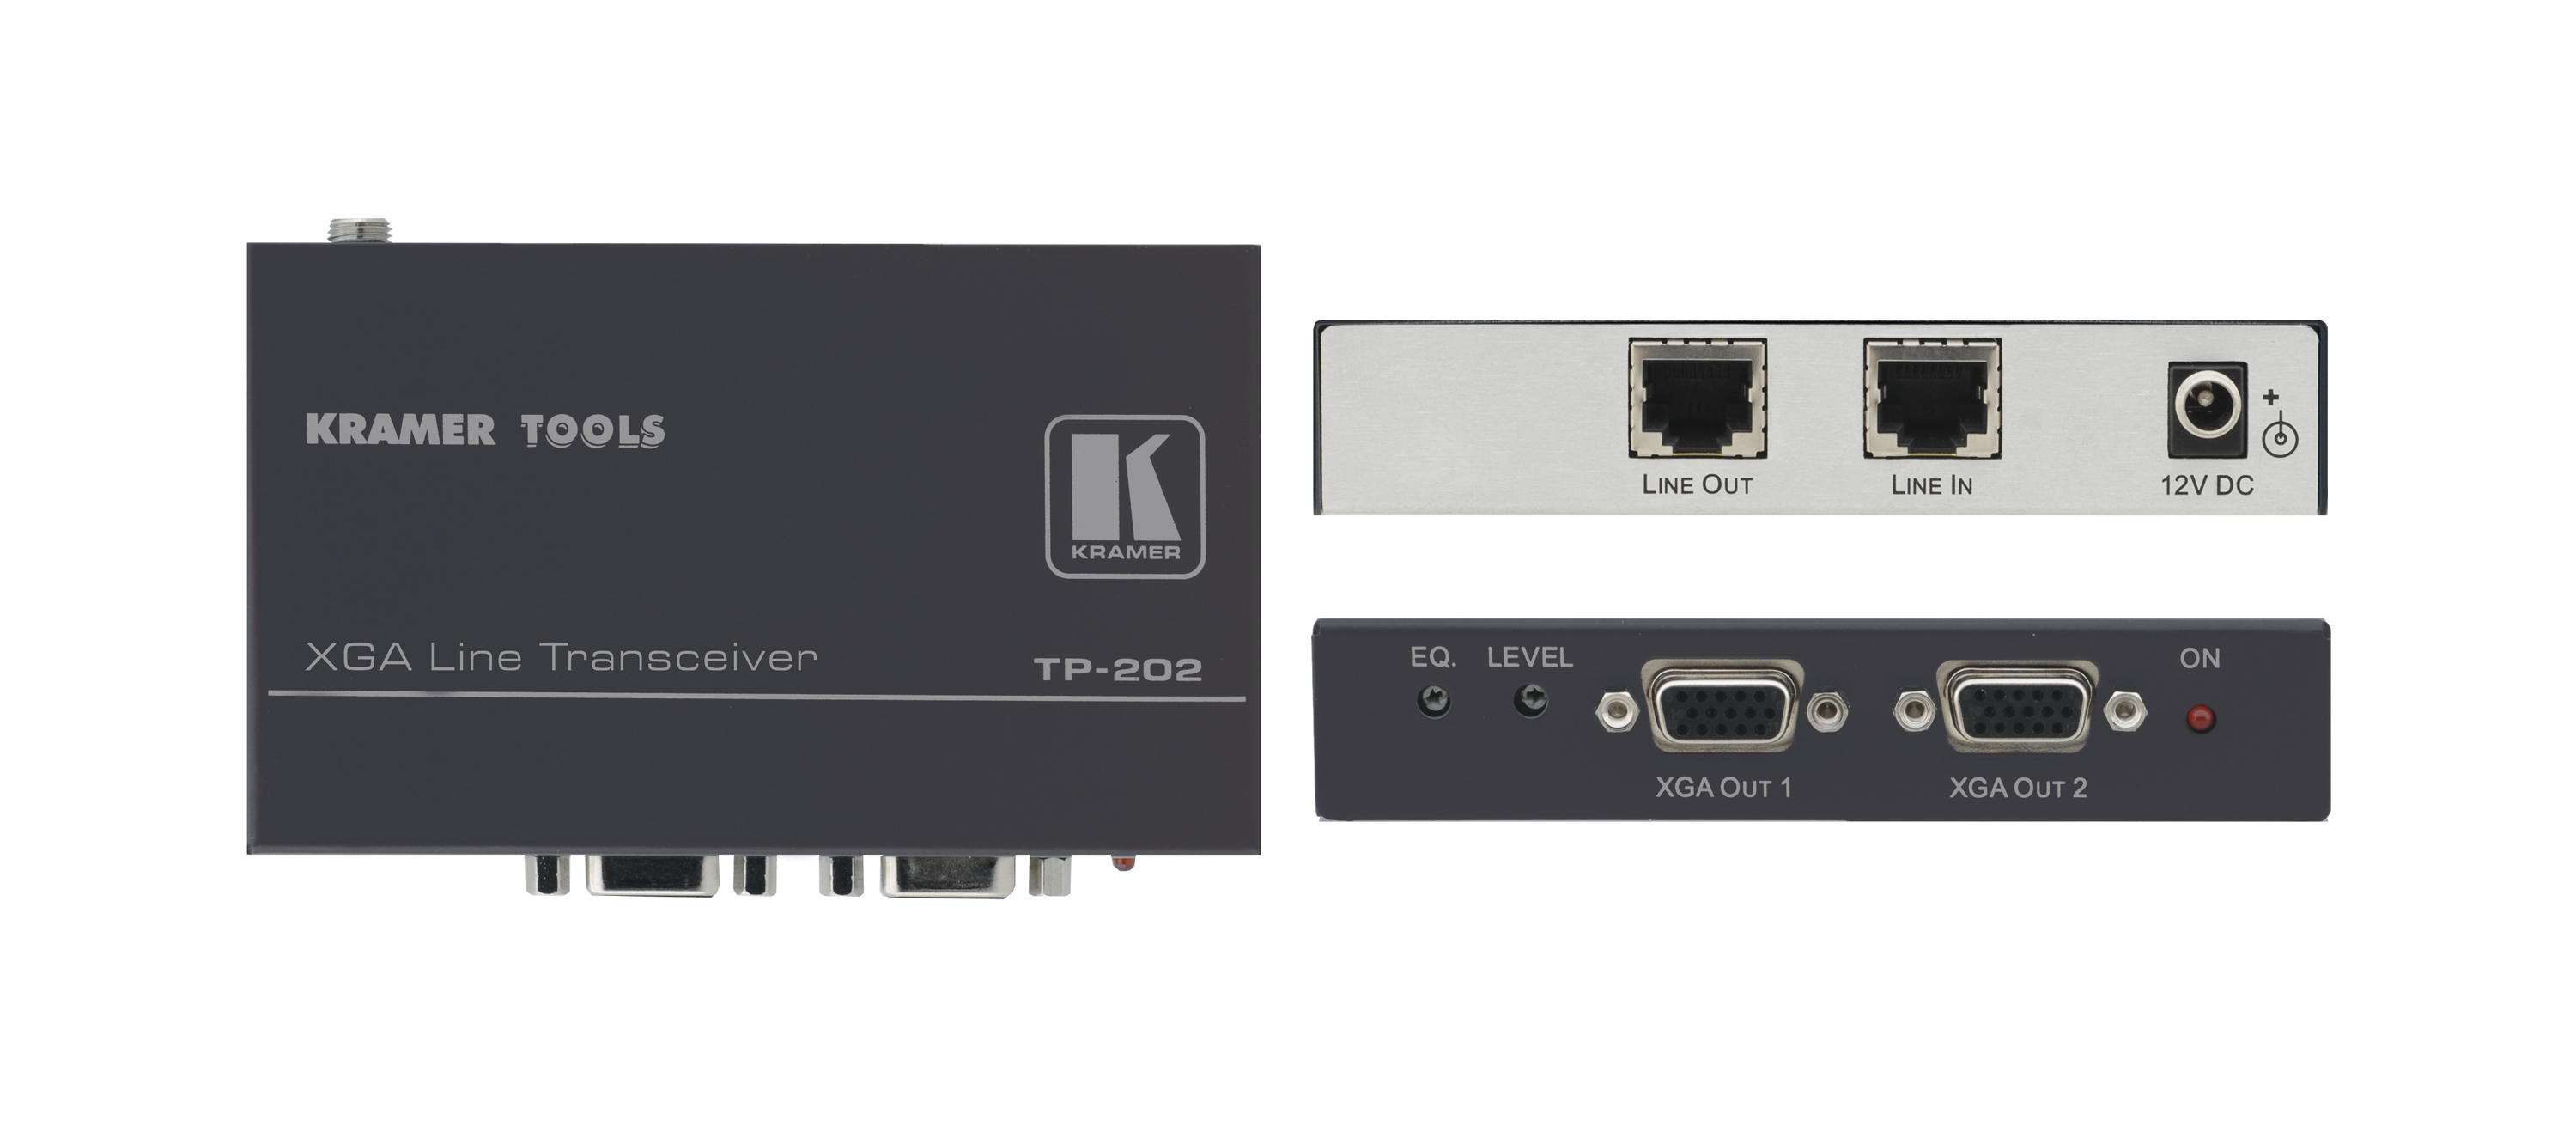 Приёмник Kramer TP-202 и ретранслятор сигнала VGA-UXGA/WUXGA и HDTV по витой паре (CAT5), 2 выхода, с регулировкой уровня и АЧХ, длина линии передачи до 100м, возможность выбора полярности строчных и кадровых синхроимпульсов